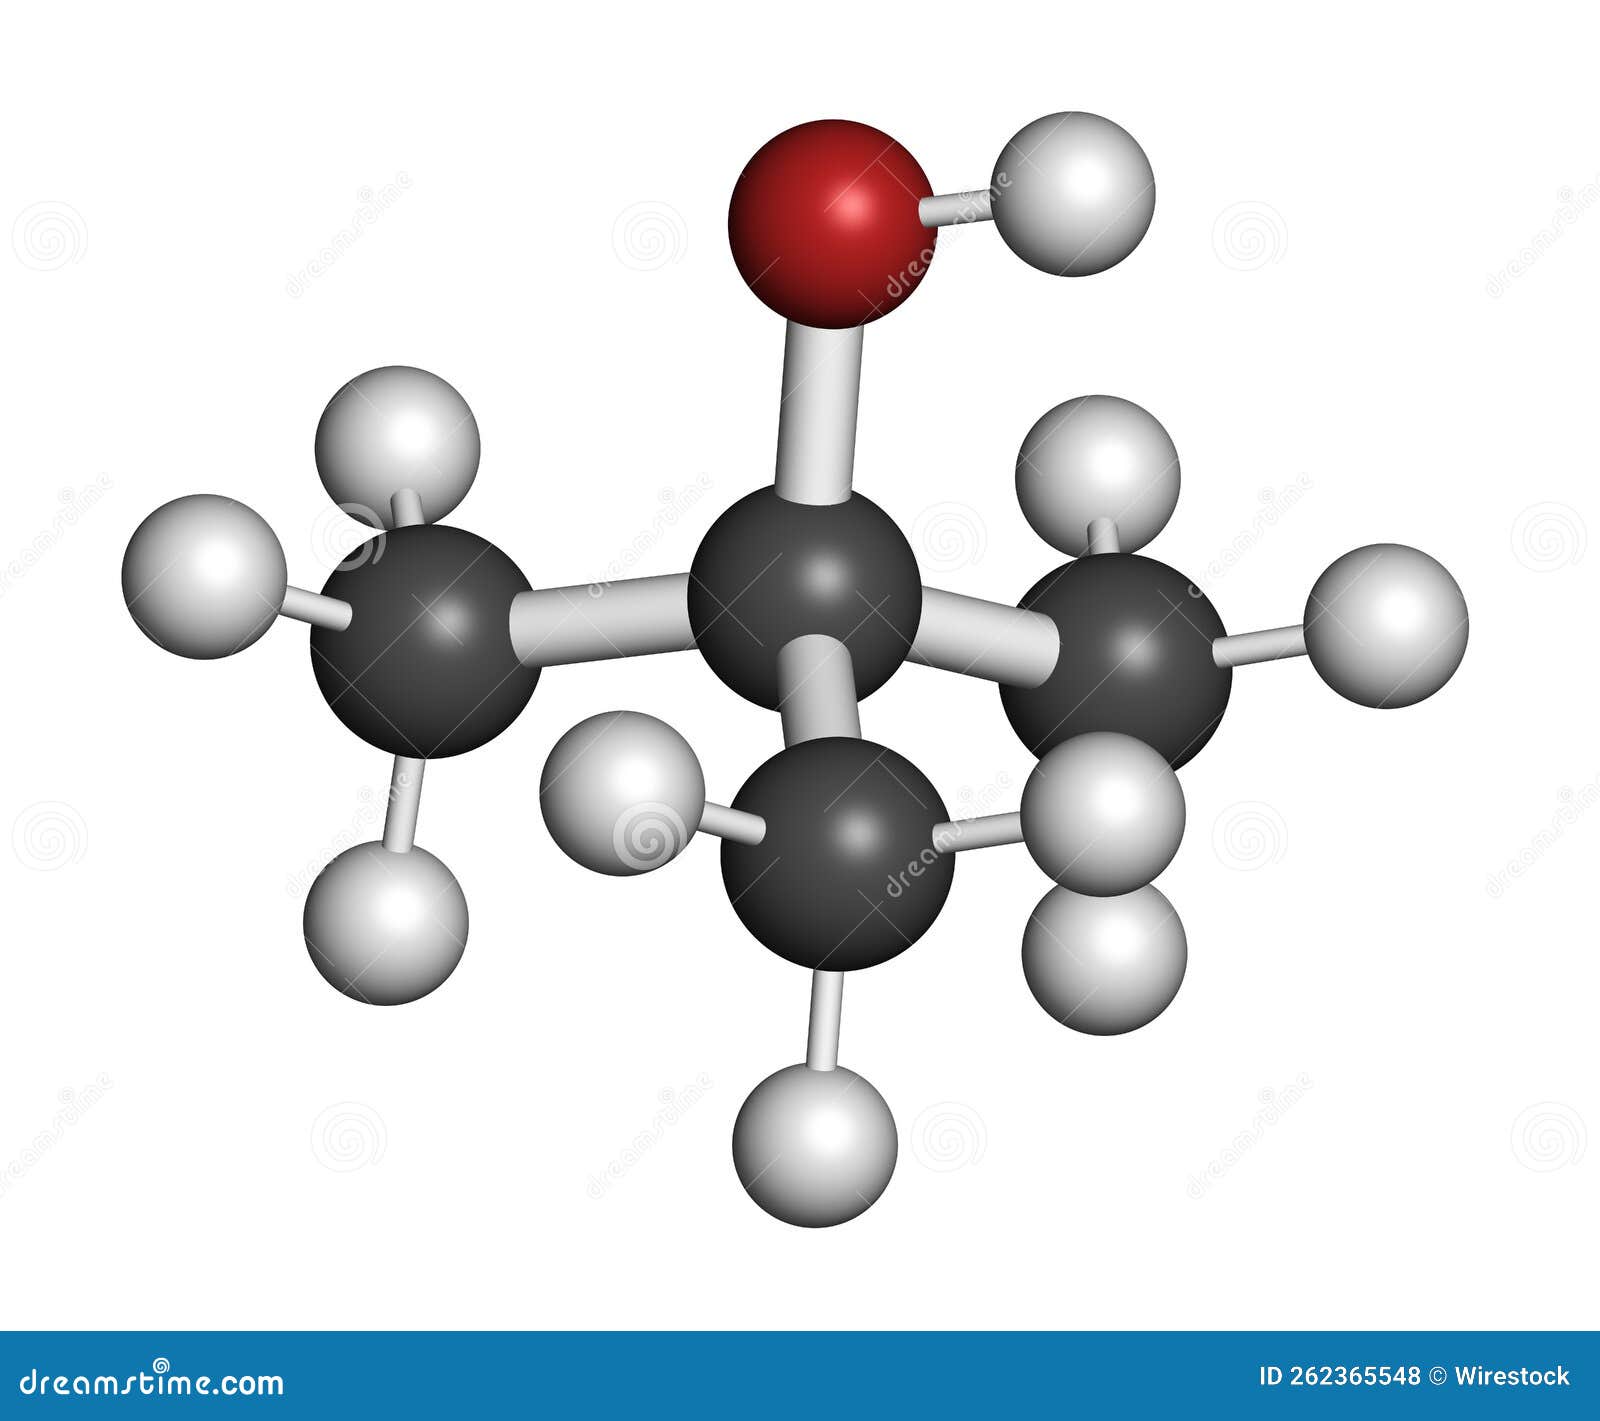 tert-butyl alcohol (tert-butanol) solvent molecule. 3d rendering.